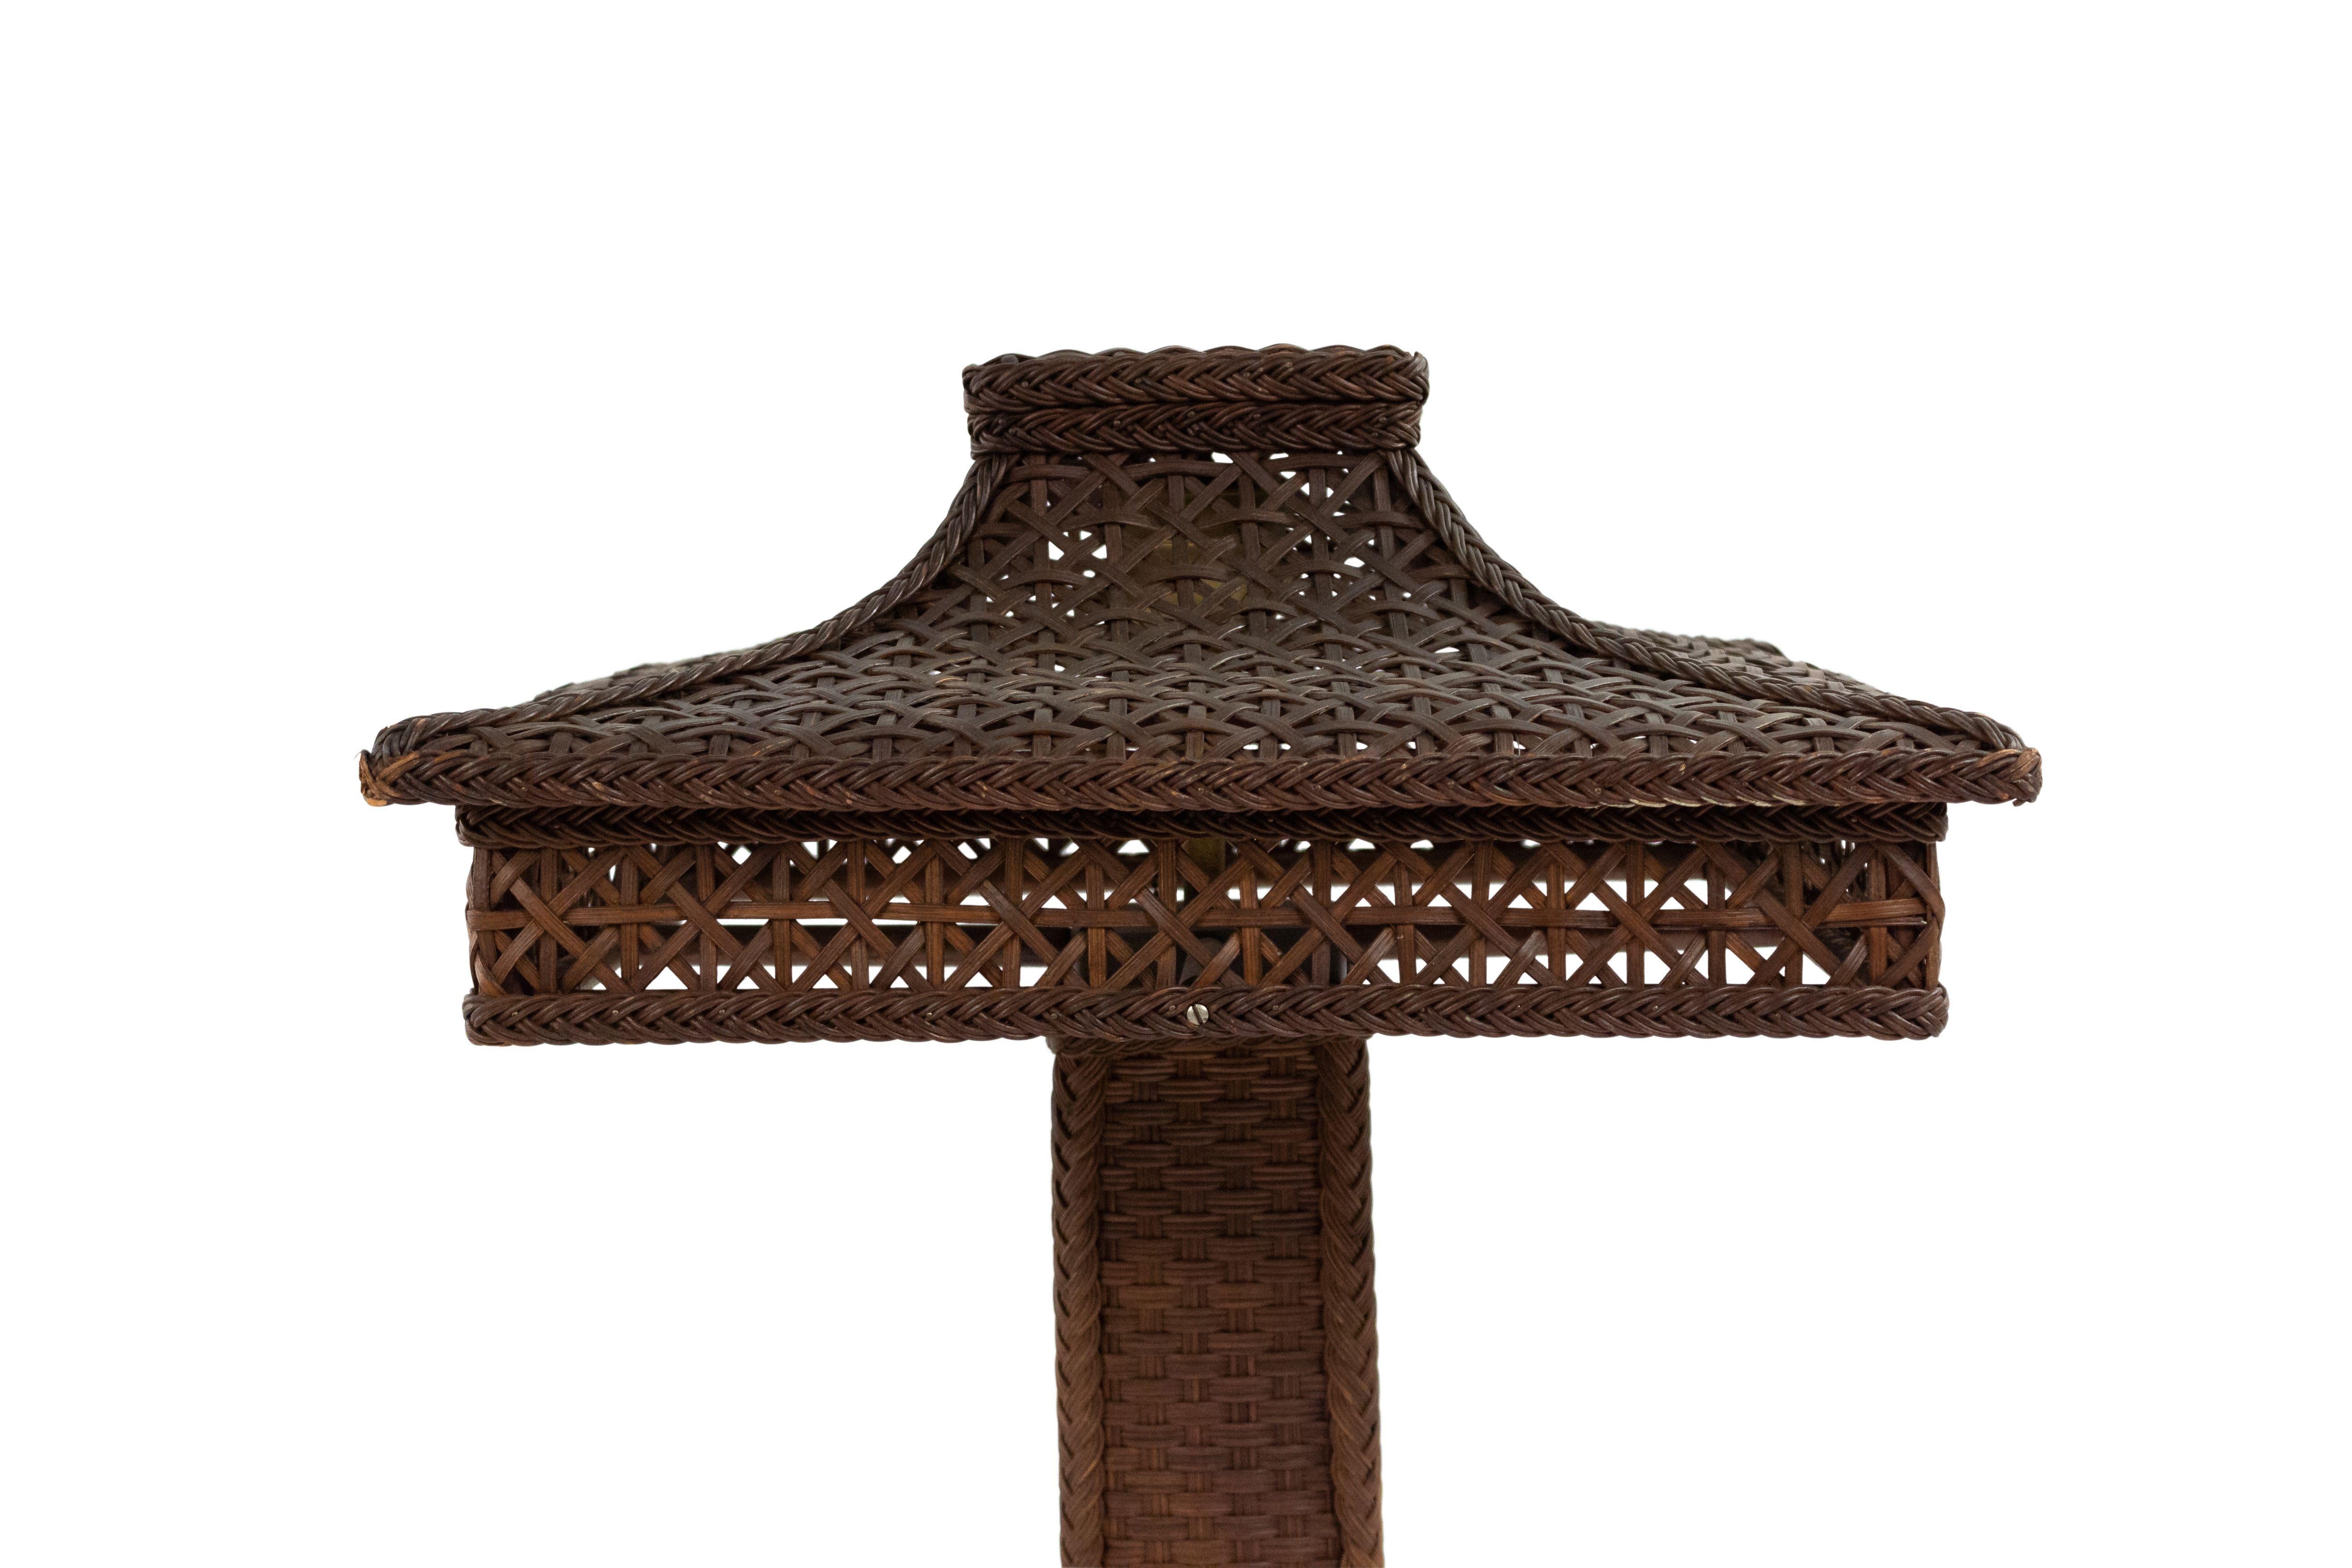 Grande lampe de table victorienne américaine en osier naturel avec un abat-jour carré filigrané reposant sur une base carrée tressée (label HEYWOOD BROS WAKEFIELD)
